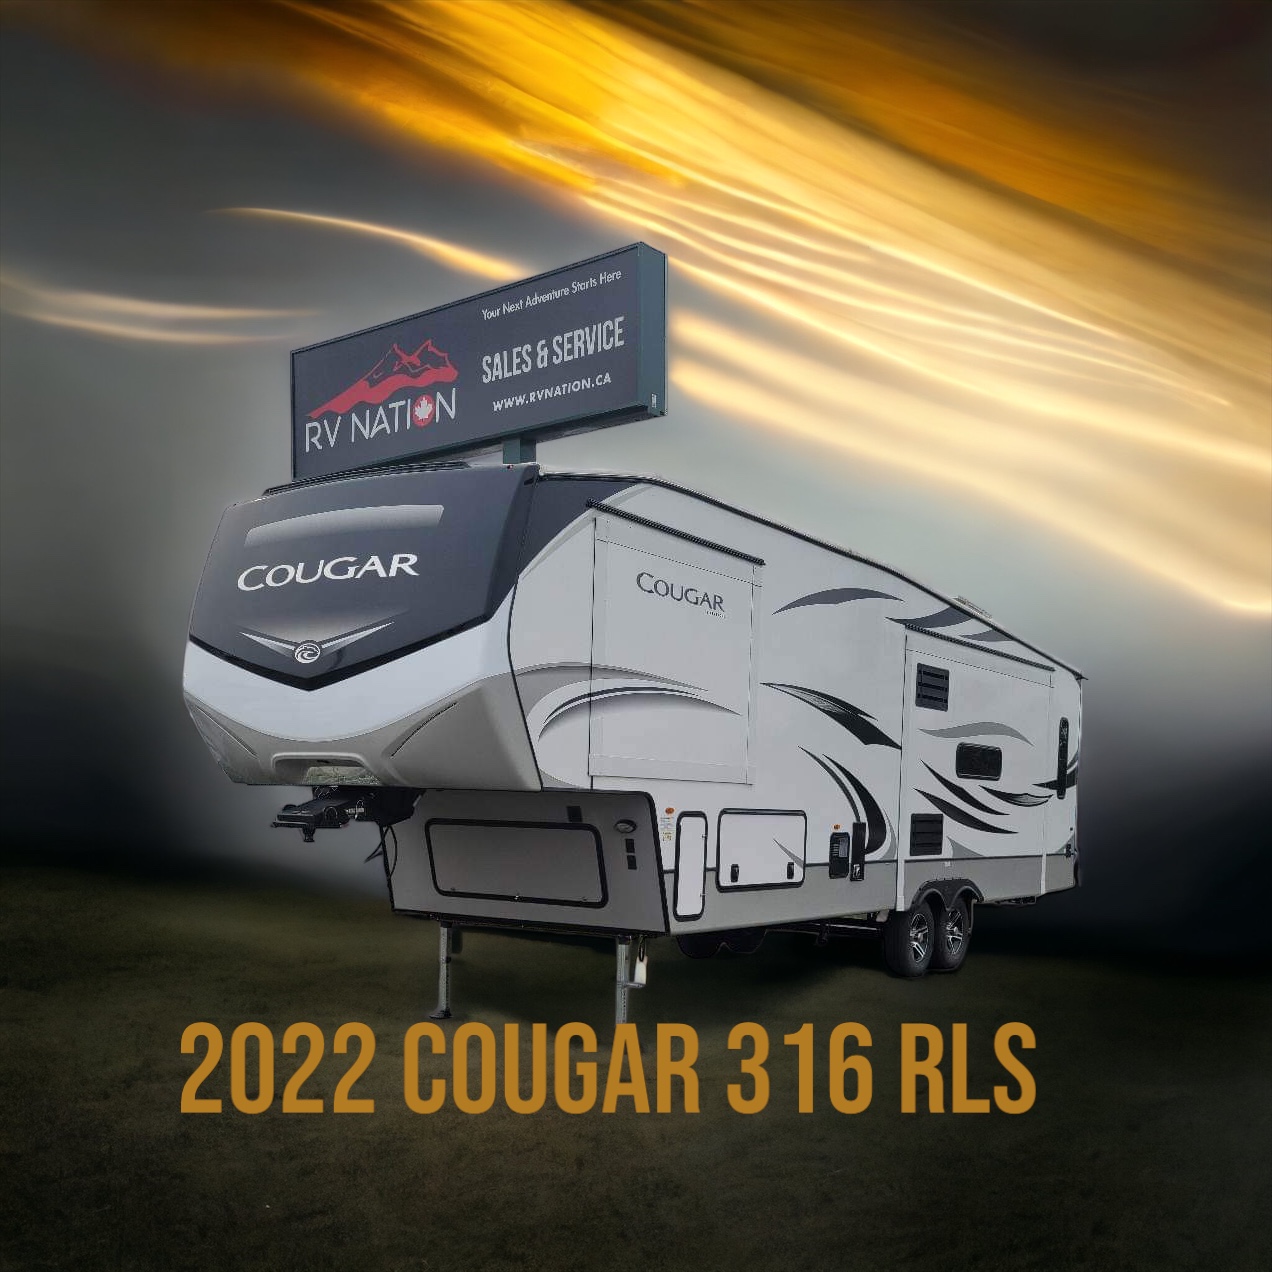 2022 COUGAR 316 RLS